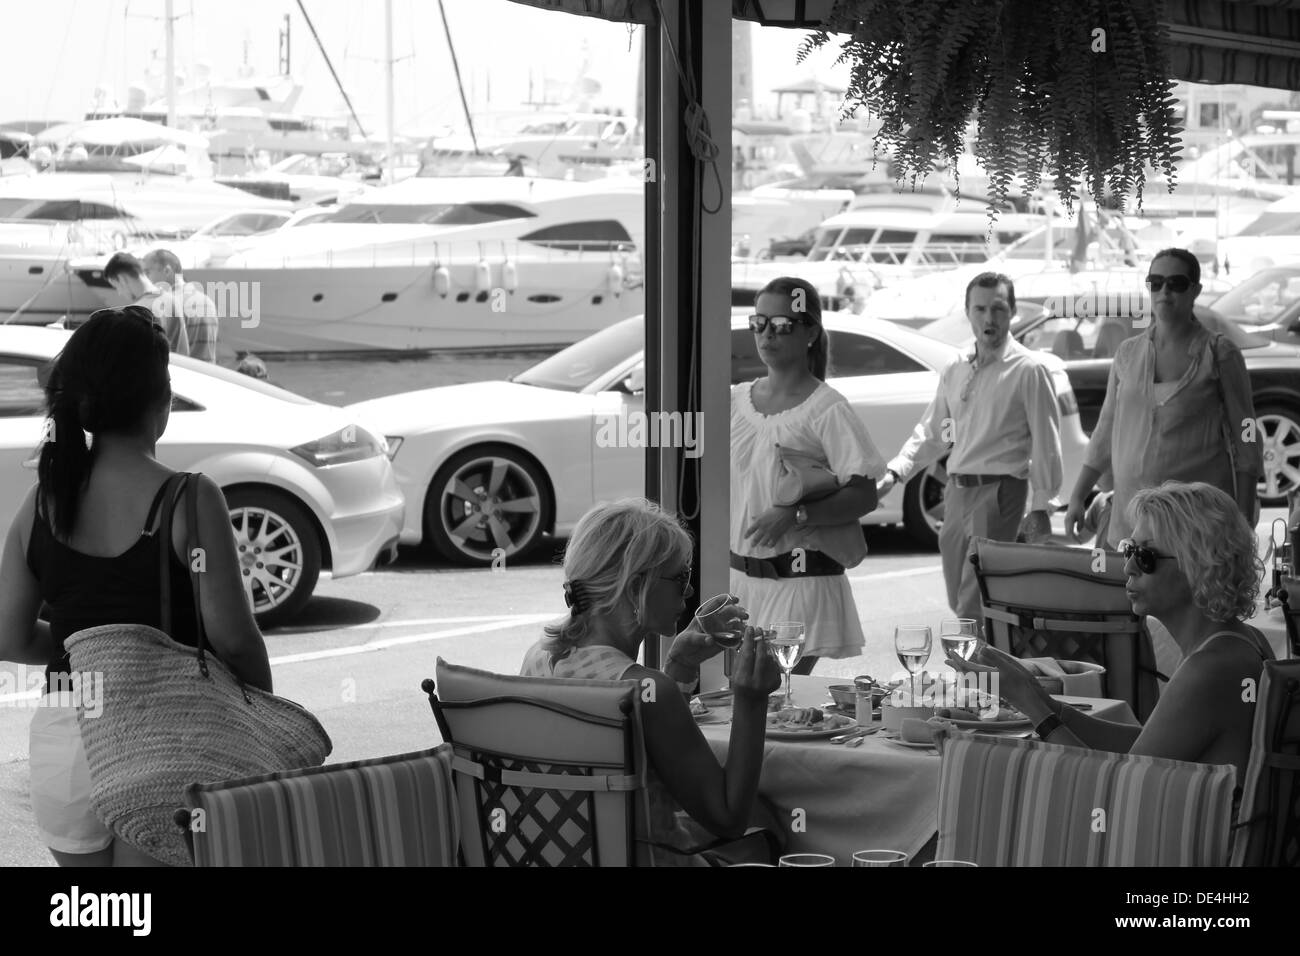 Vue sur cafe restaurant vers port en ville méditerranéenne ensoleillée Banque D'Images